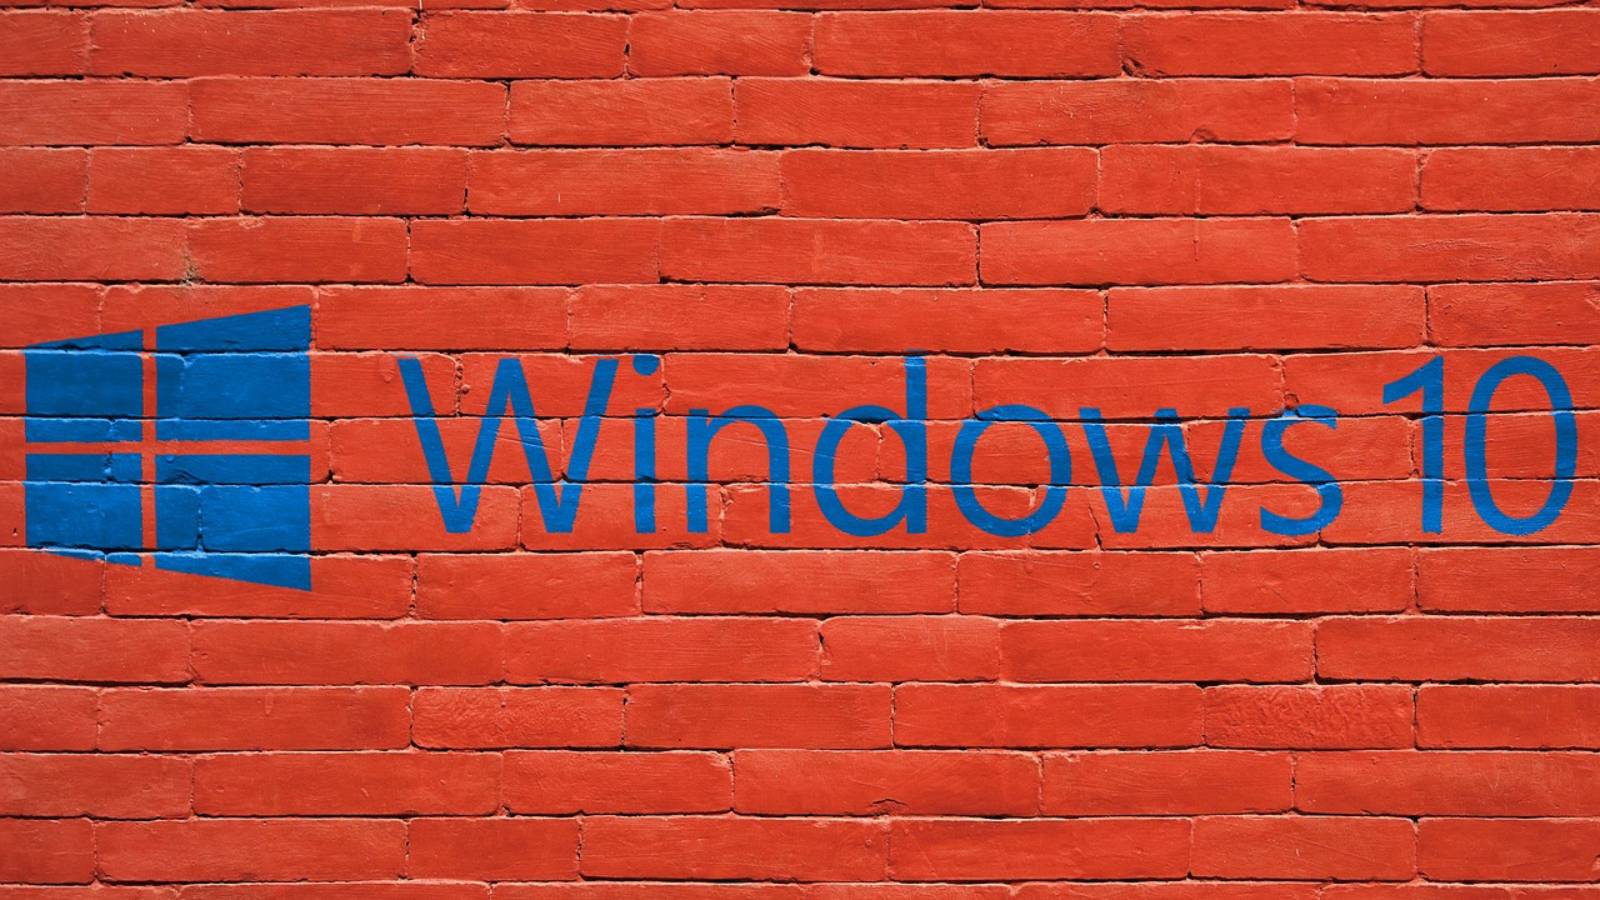 Novità Windows 10 aggiornamento ottobre 2019